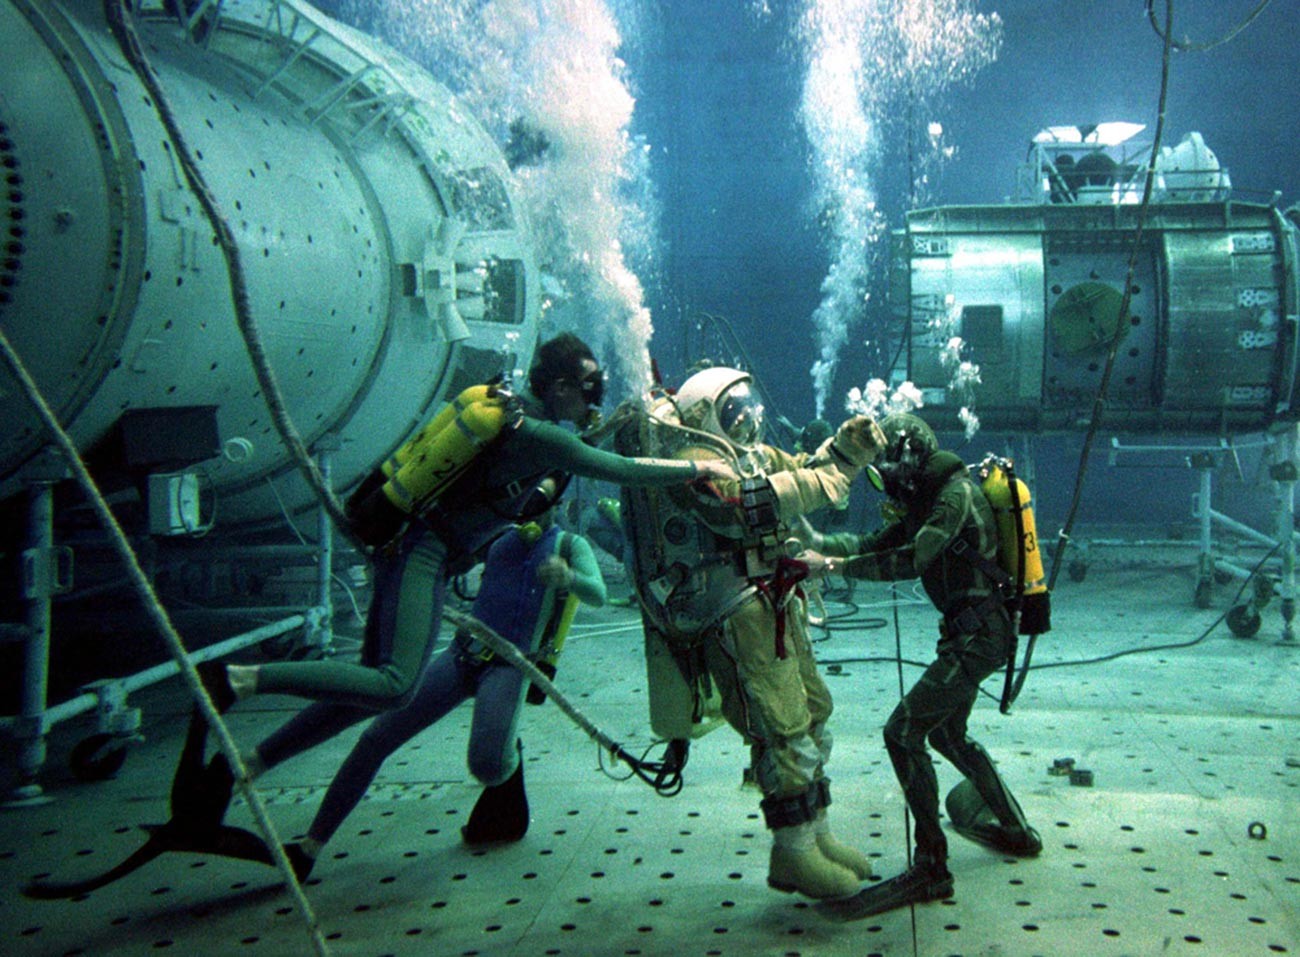 Ruskom testnom instruktoru Olegu Puškaru pomažu ronioci tijekom podvodnih ispitivanja na replici oštećene svemirske stanice 